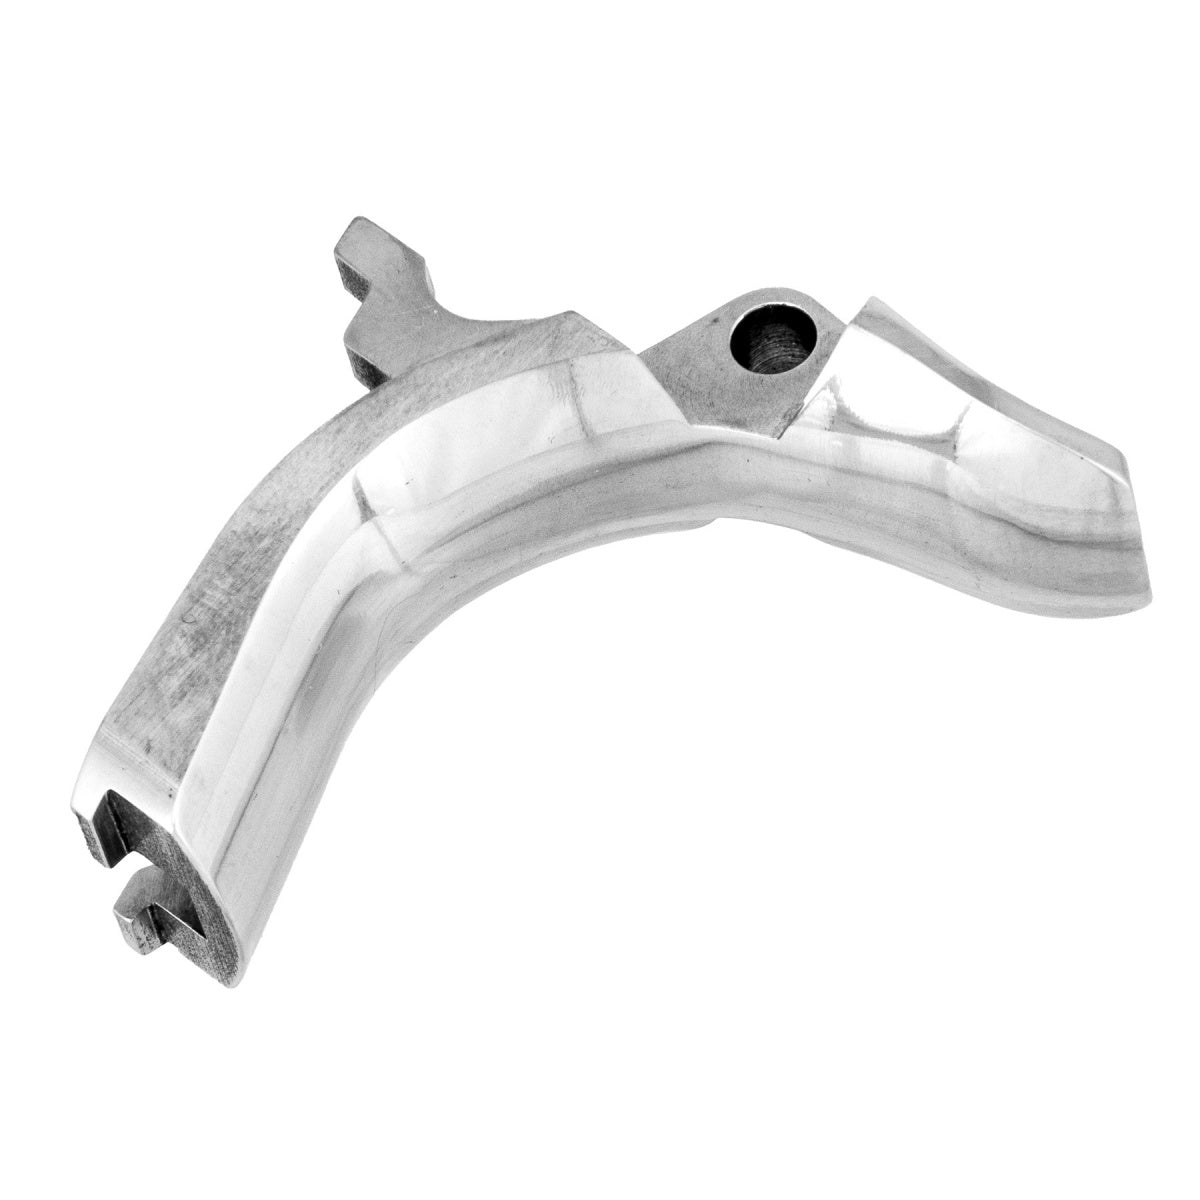 Airsoft Masterpiece Steel Grip Safety - Type 4 (Silver)